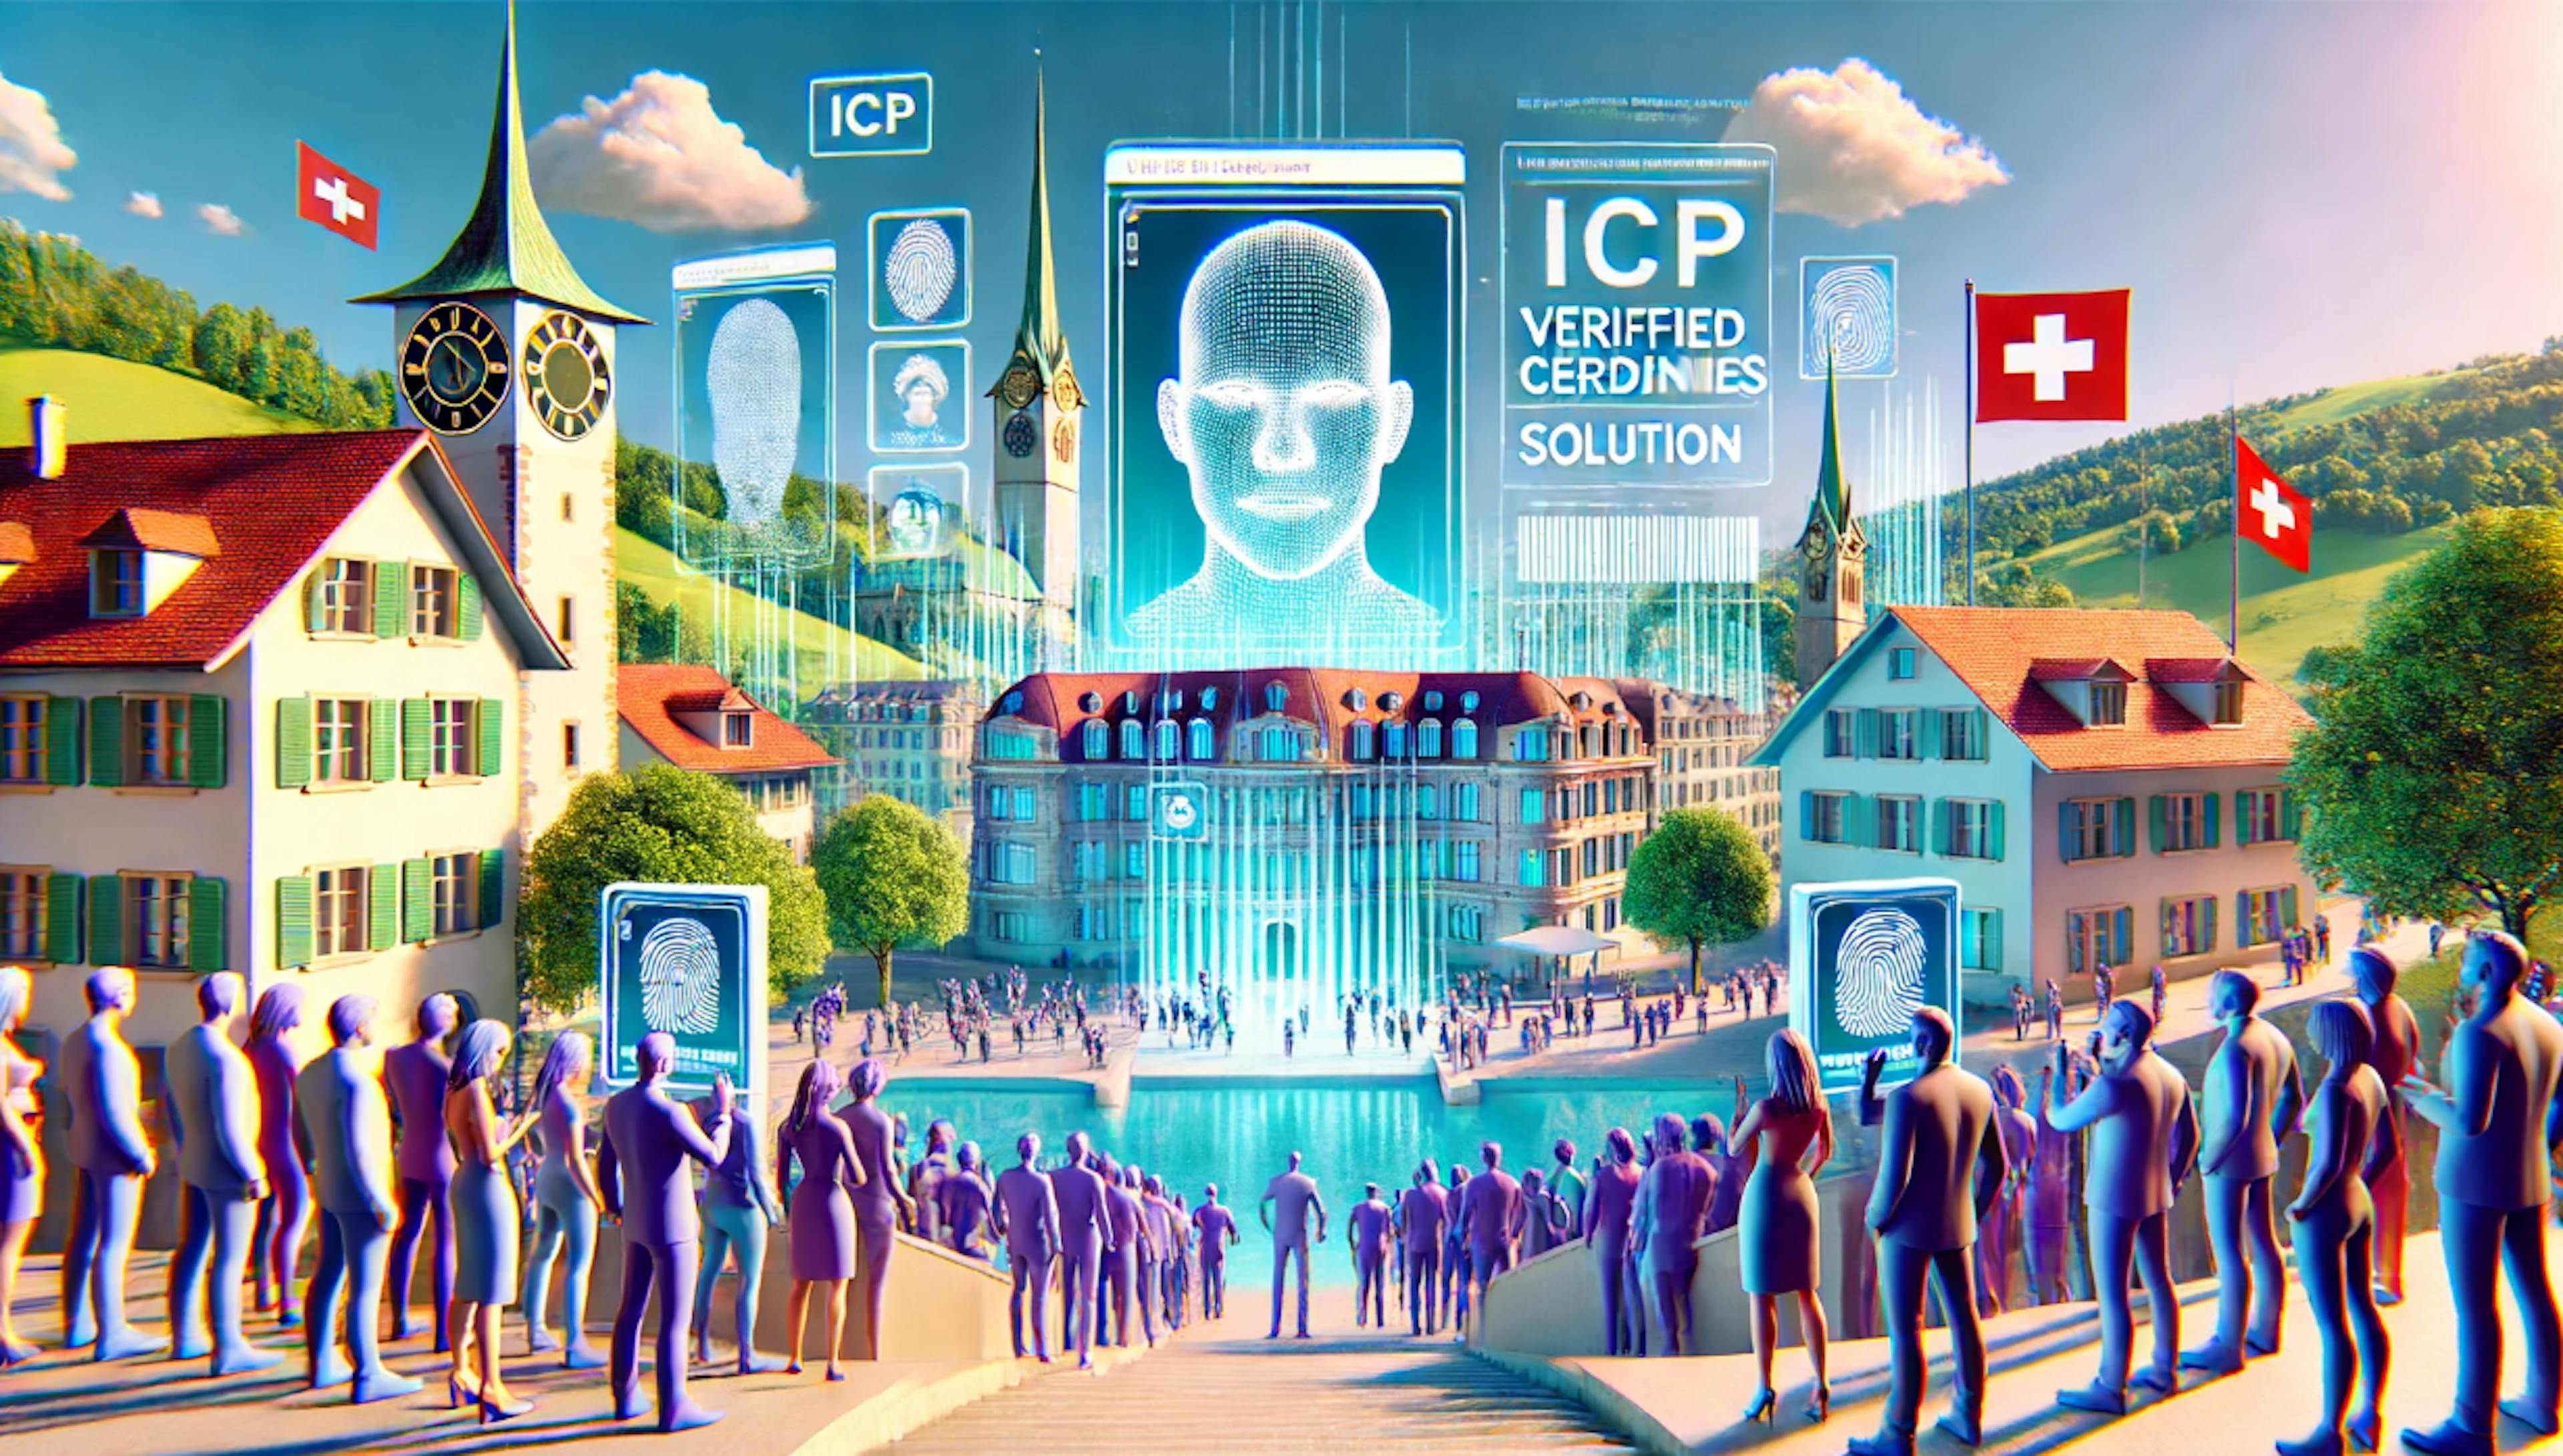 featured image - Como a solução sem carteira da ICP aumenta a confiança e a privacidade online